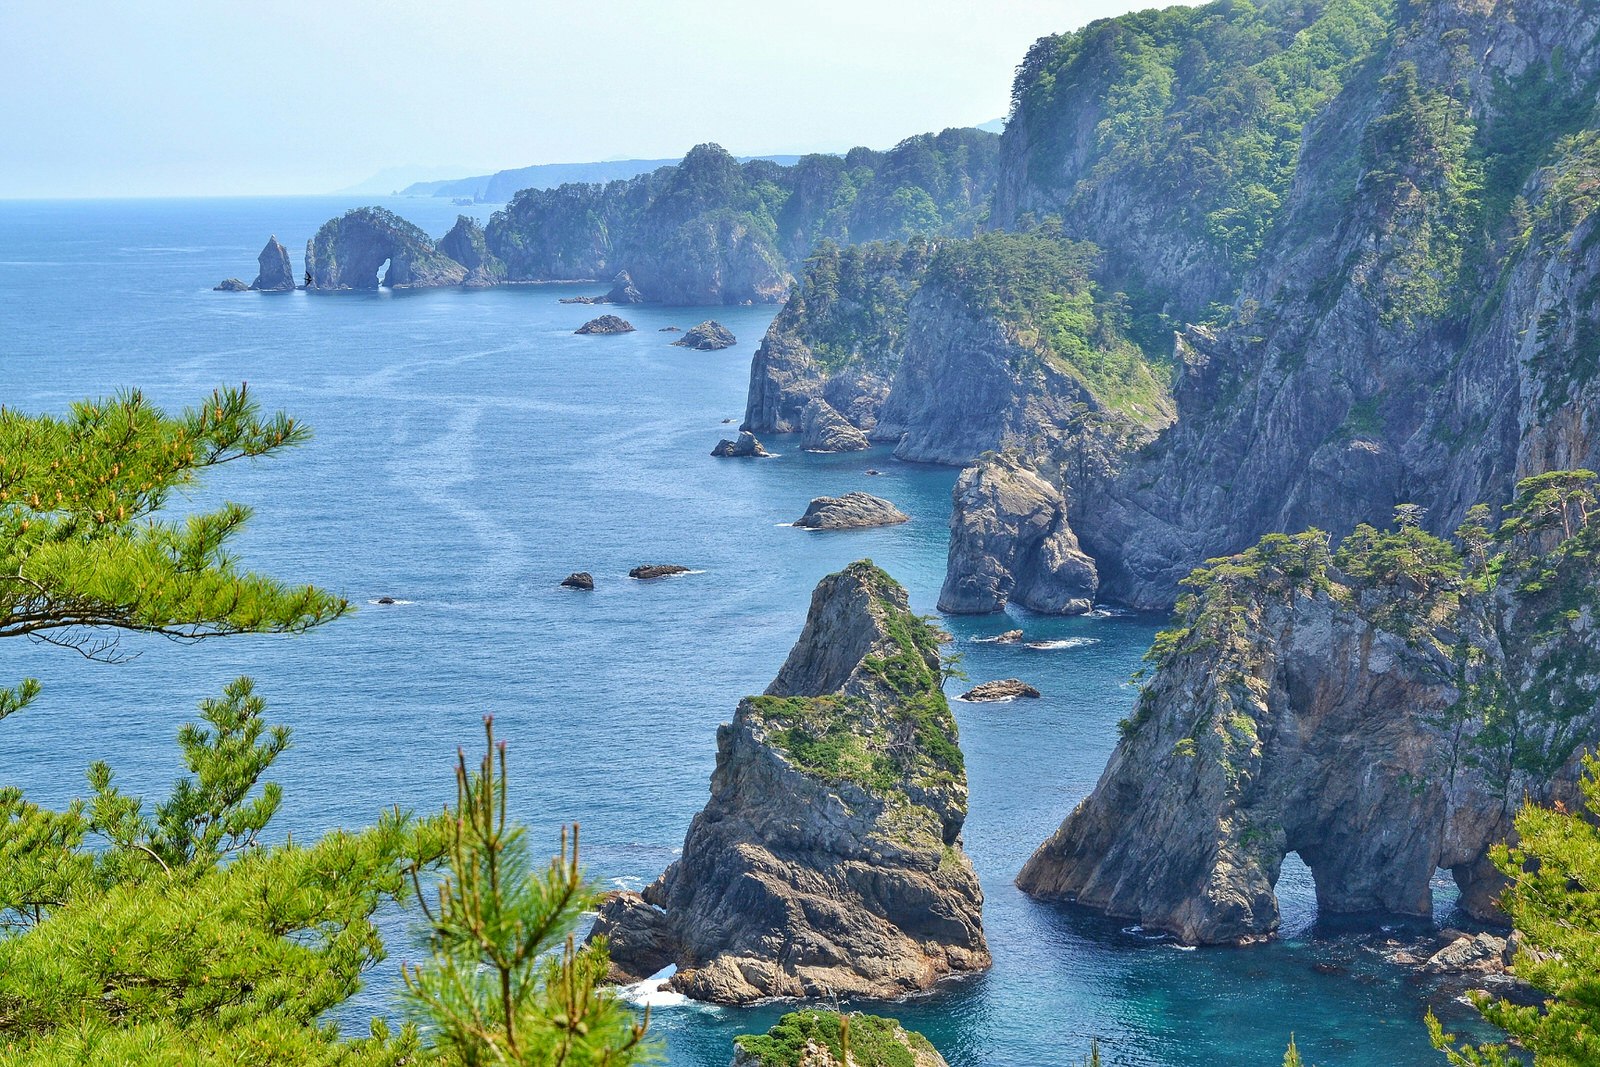 Utsikt över den klippiga kusten av Kitayamazaki-klipporna i Iwate på en klar och solig dag.  De skira, steniga klipporna är toppade med ljusgrönt gräs och omgivna av rastlöst hav.